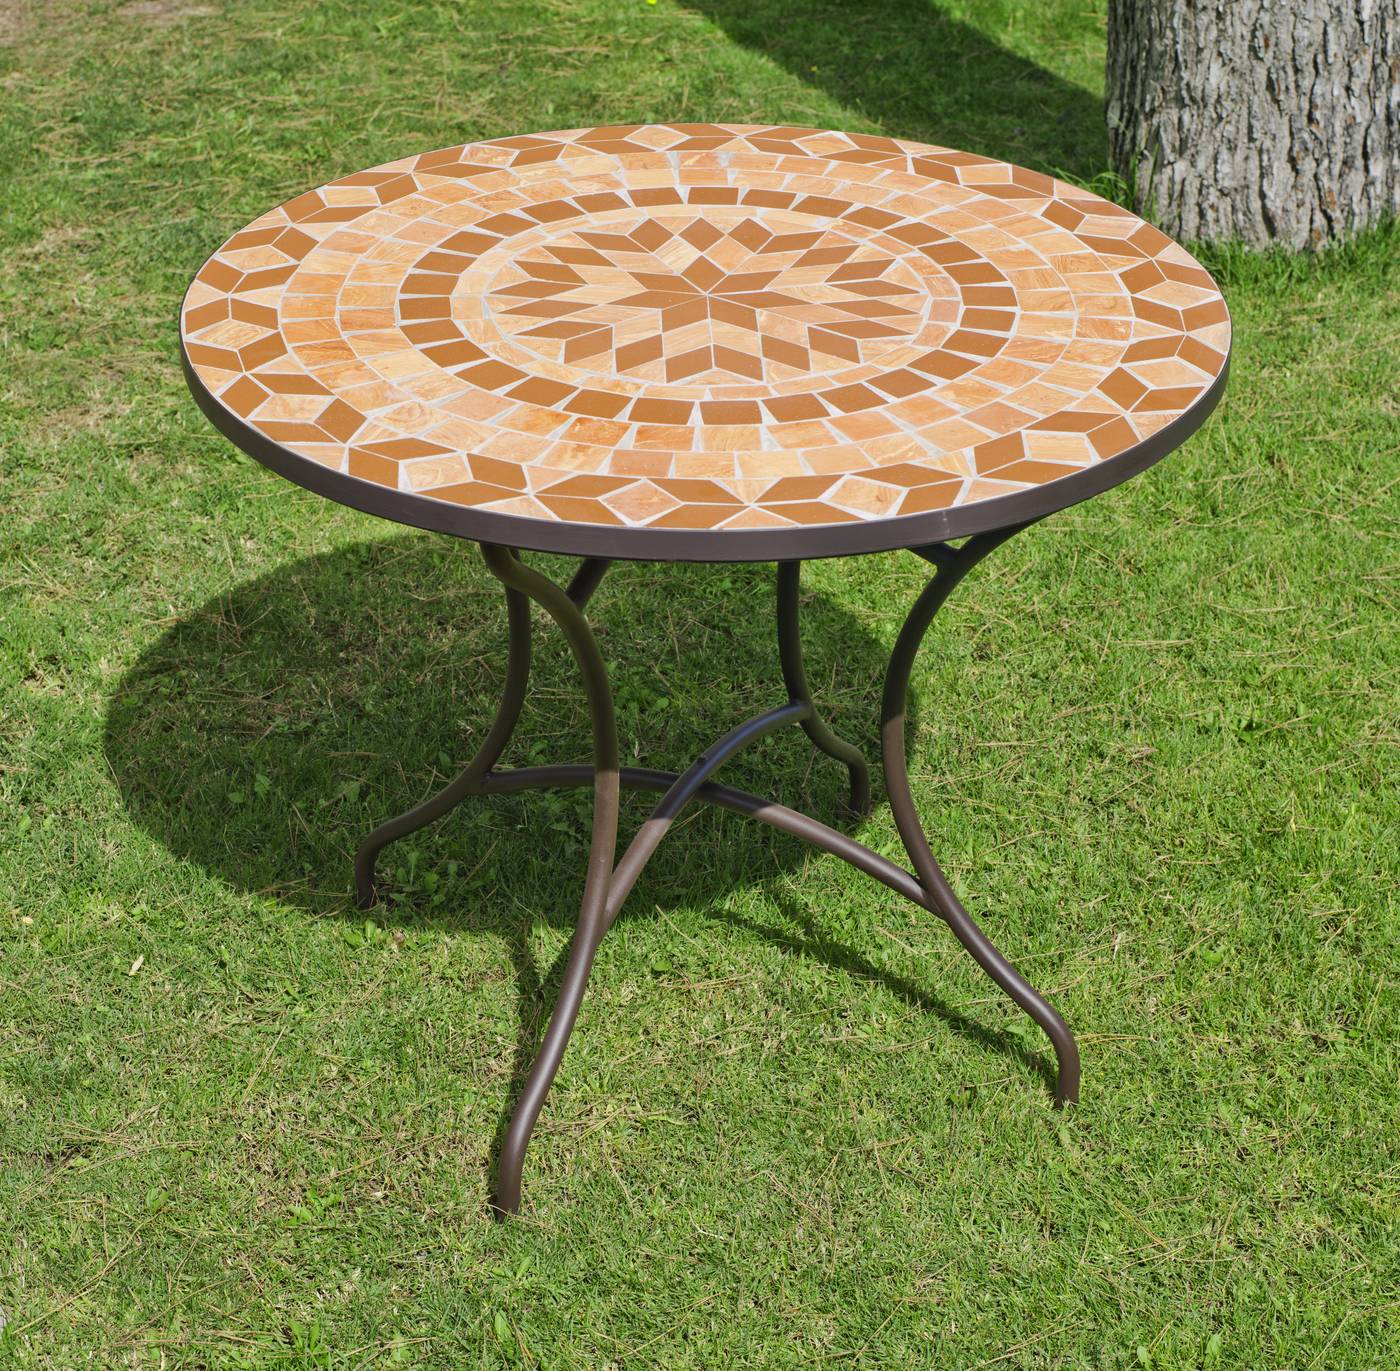 Set Mosaico Priscila/Brasil-90/4 - Conjunto de forja para jardín: 1 mesa con panel mosaico + 4 sillones de acero y trenzado sintético